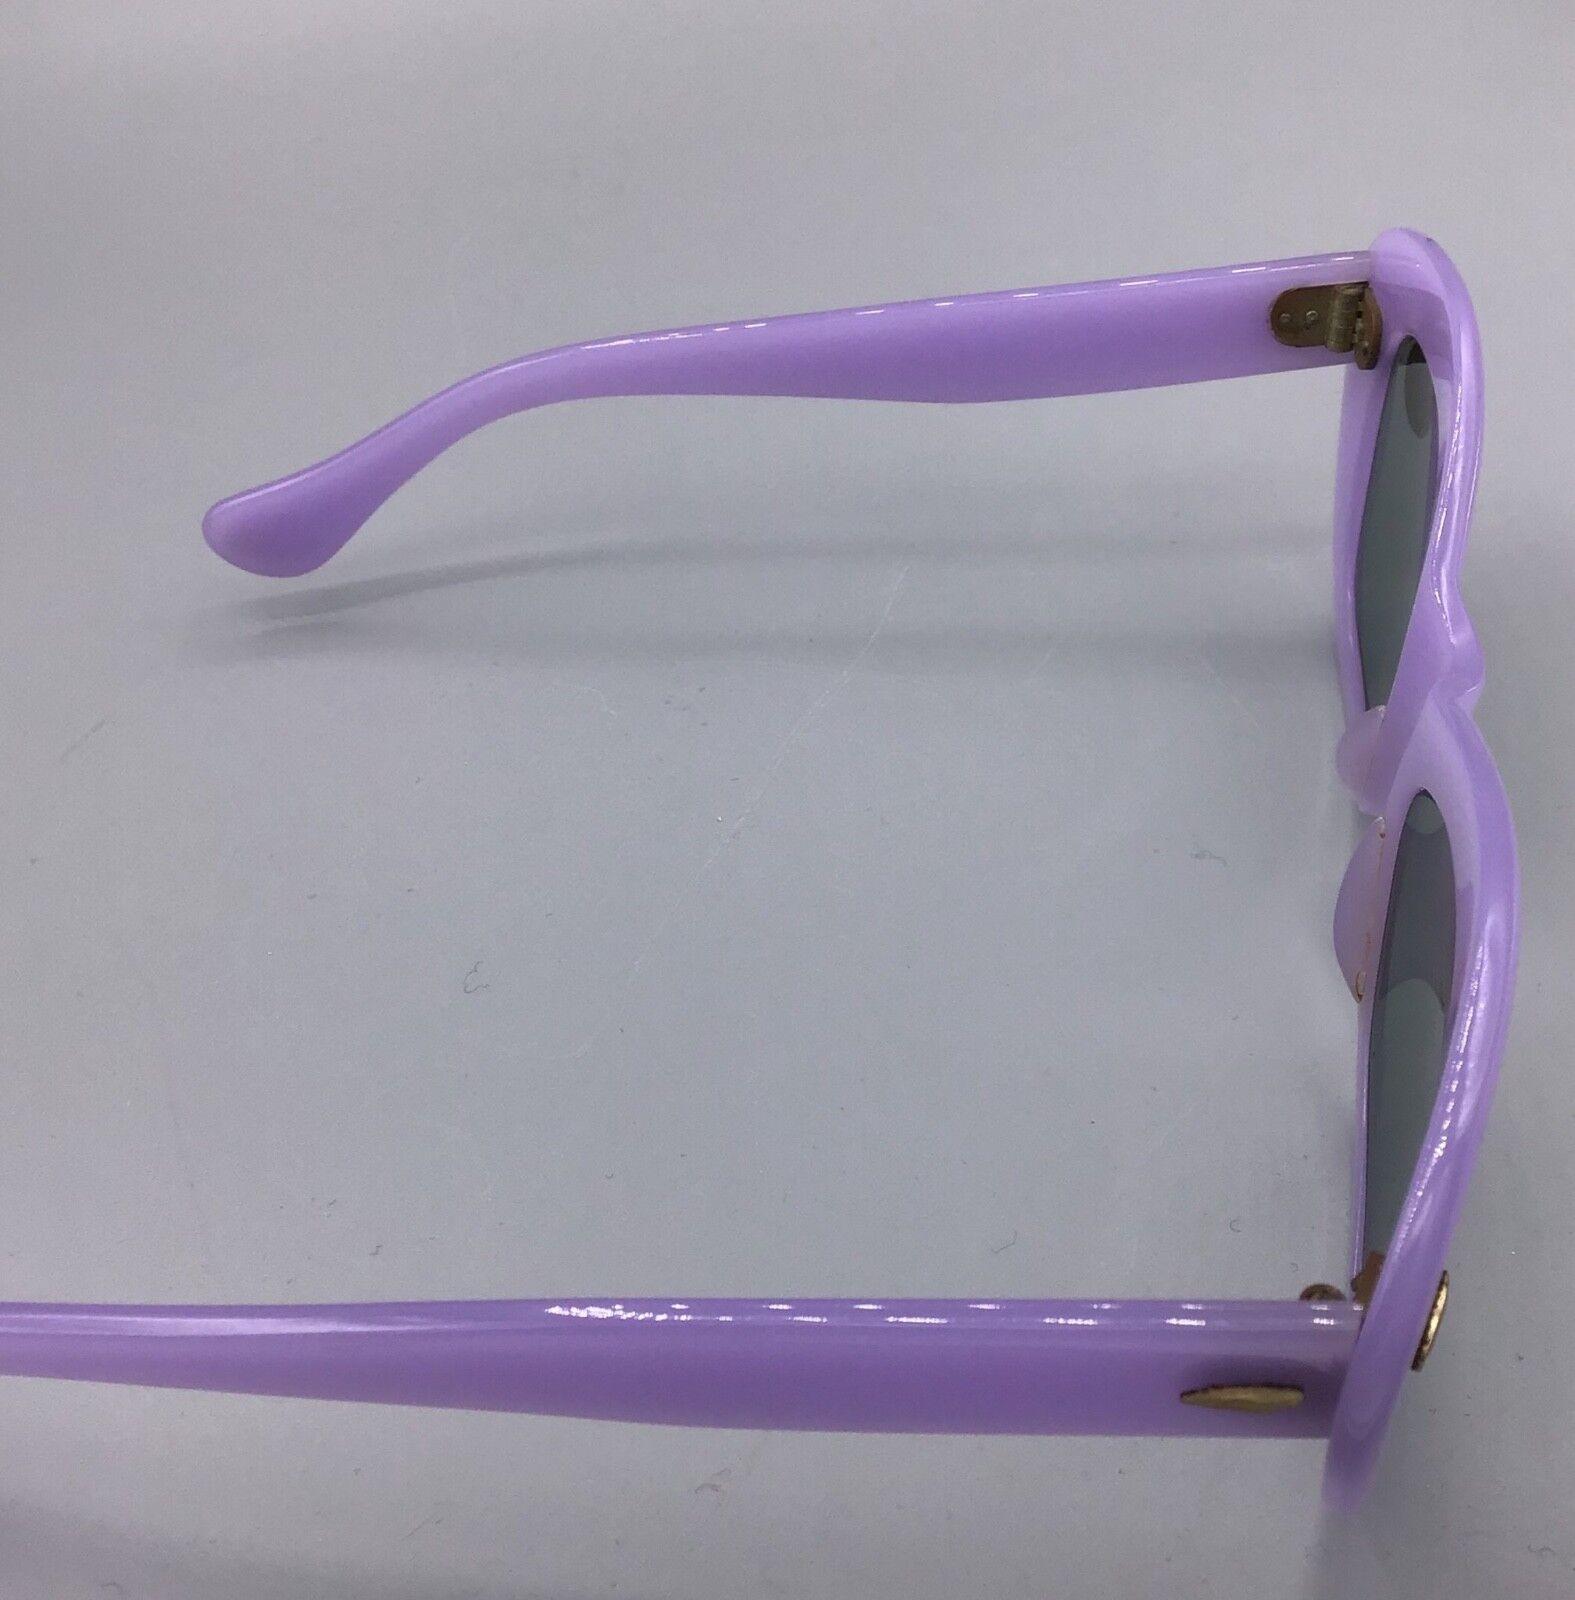 occhiale vintage Zodiac cristalli lavorati lenti lens da sole Sunglasses